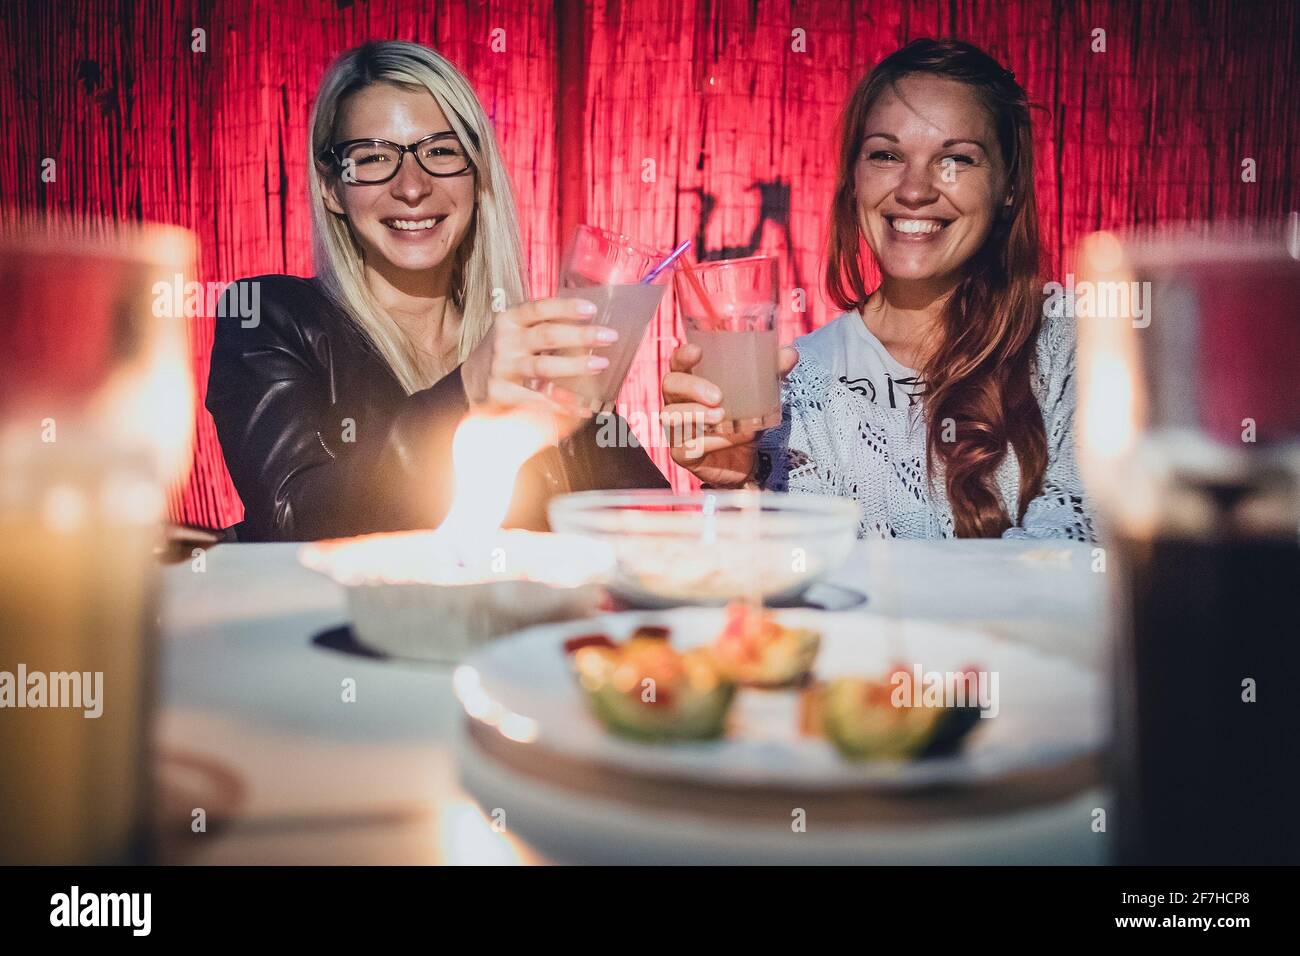 Zwei junge Frauen, eine Blondine und ein Rotschopf, jubeln am frühen Abend  mit Gläsern voller Gin Tonic Drink und Trinkhalmen auf einem Gartenpary mit  Kerze Stockfotografie - Alamy